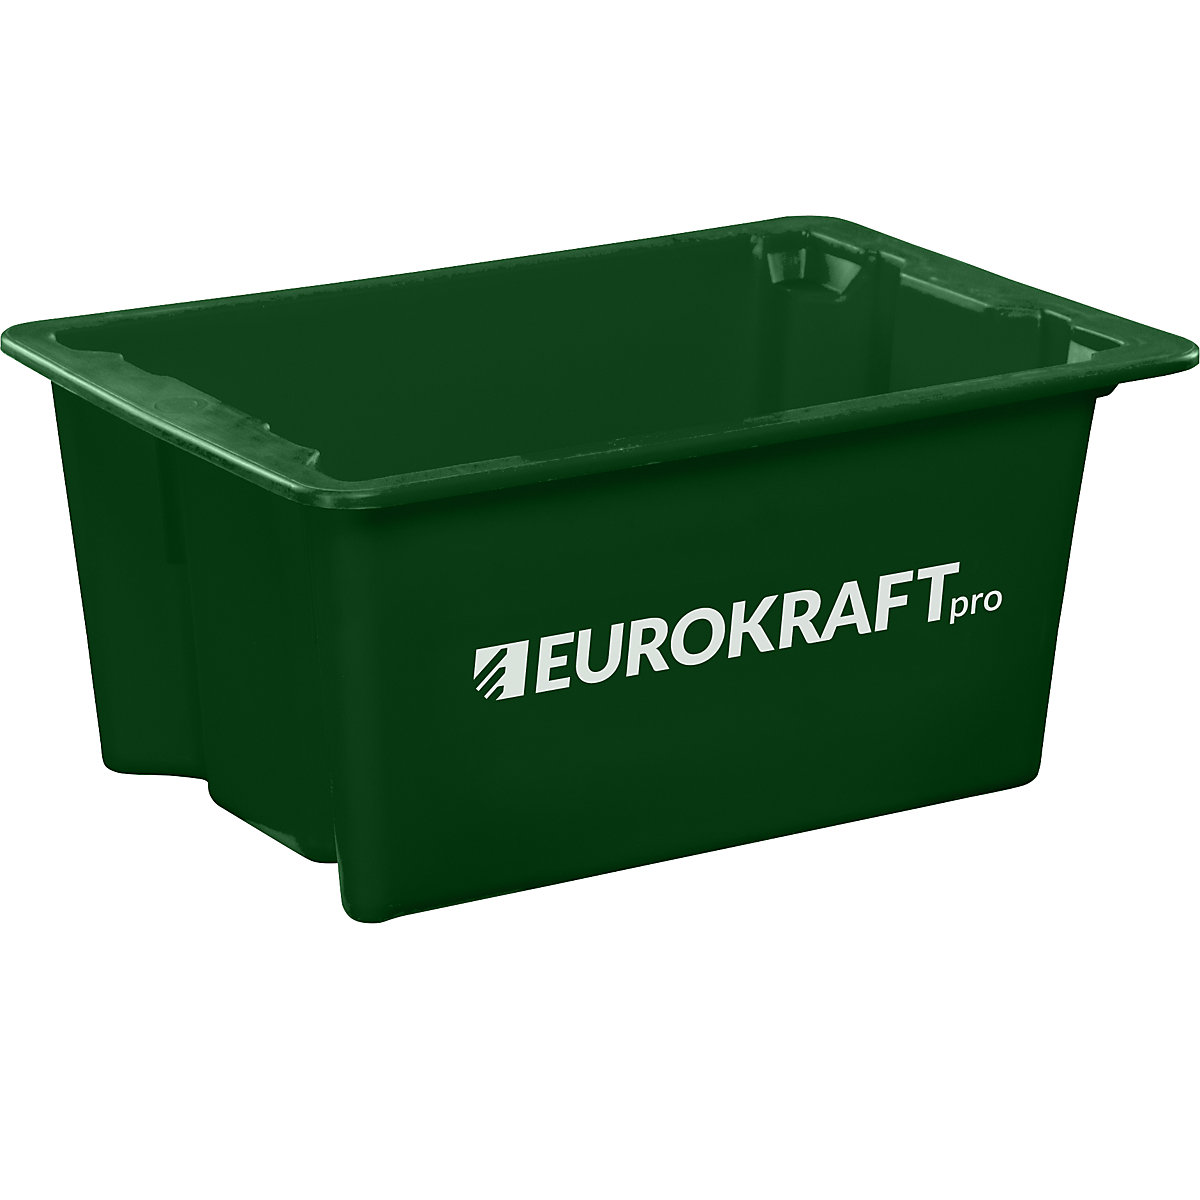 EUROKRAFTpro – Otočná stohovacia nádoba z polypropylénu vhodného pre potraviny, objem 6 litrov, OJ 4 ks, steny a dno uzatvorené, zelená